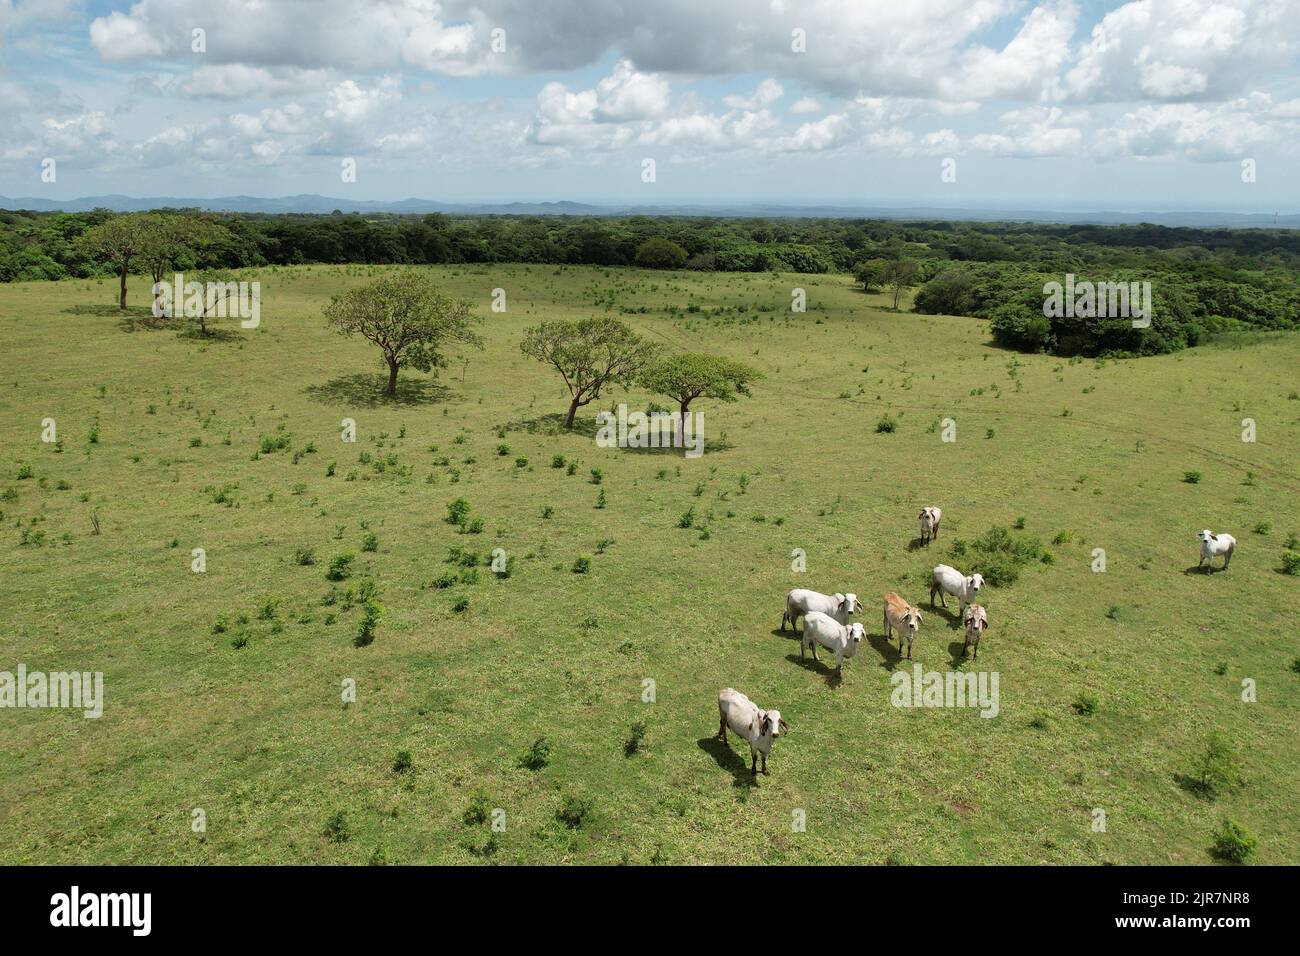 Les vaches blanches se tiennent sur le terrain vert vue aérienne de drone Banque D'Images